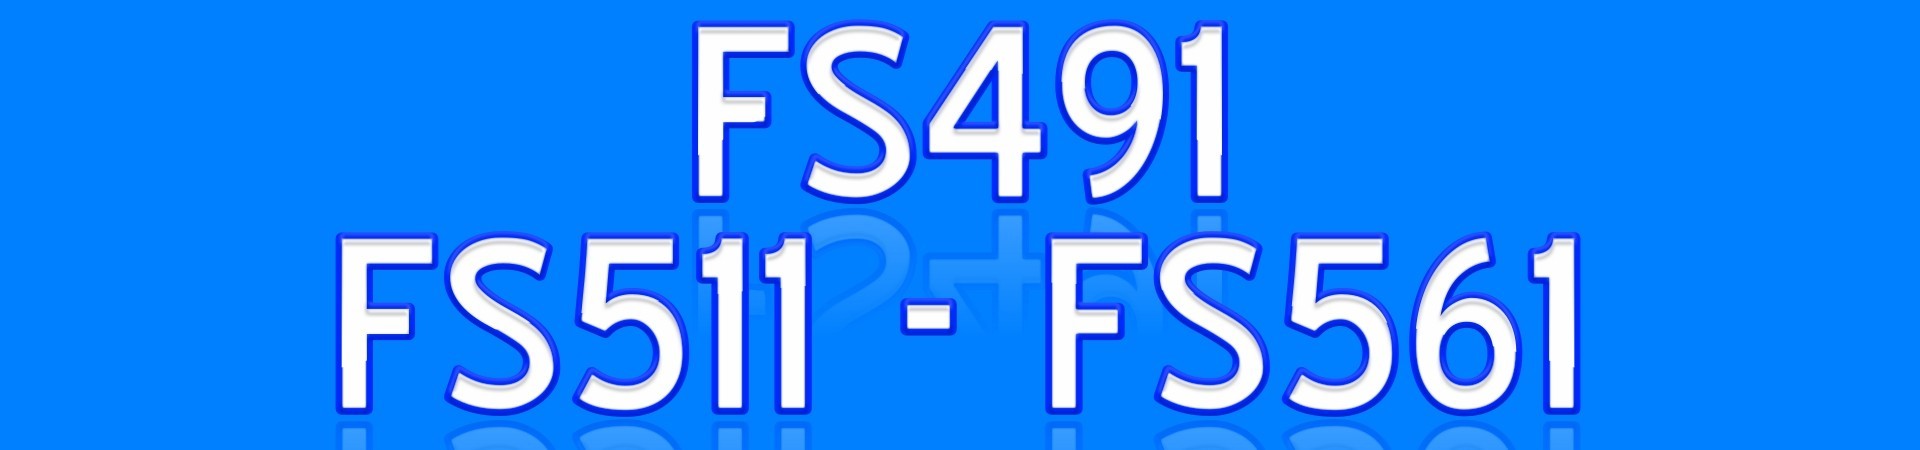 FS491 FS511 FS561